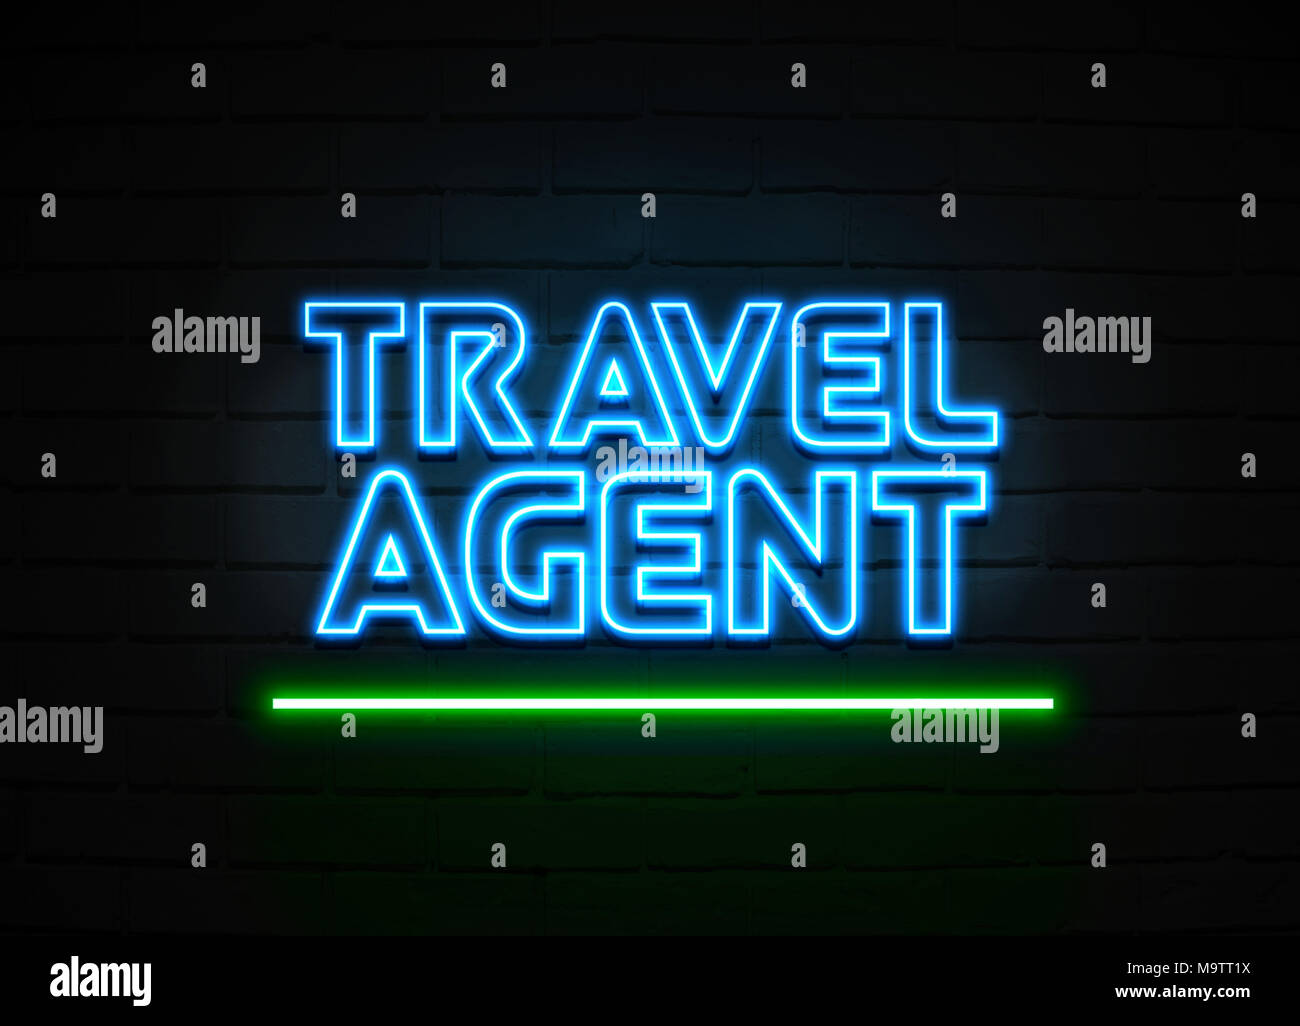 Agent de voyages en néon - Glowing Neon Sign sur mur brickwall - rendu 3D illustration libres de droits. Banque D'Images